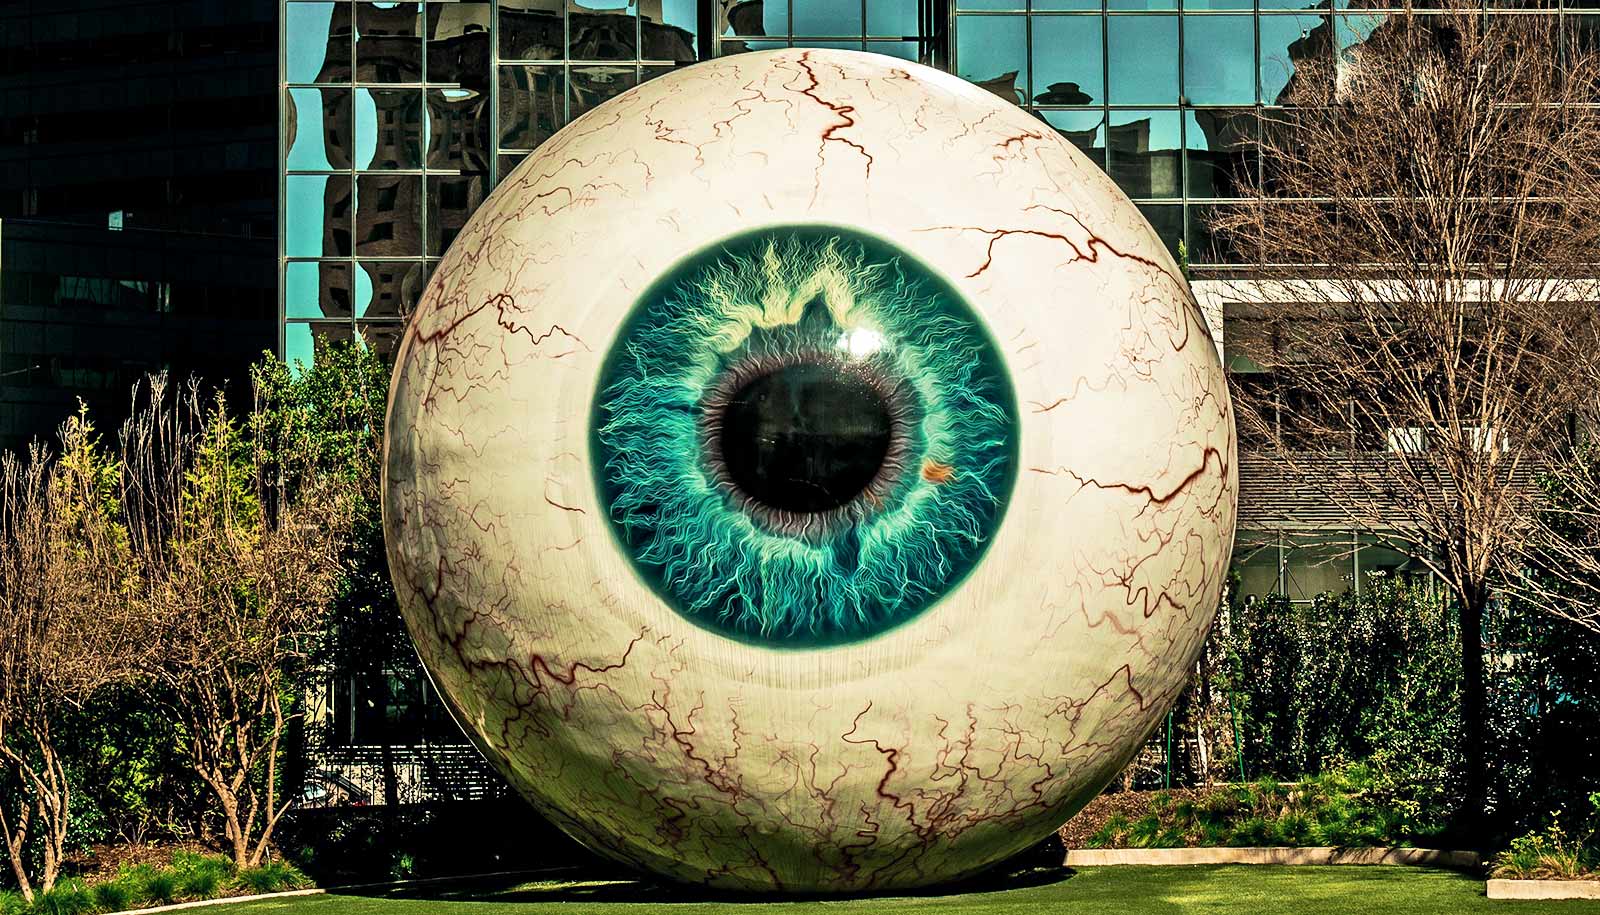 En stor øjeæblekunstinstallation i en park foran en kontorbygning.